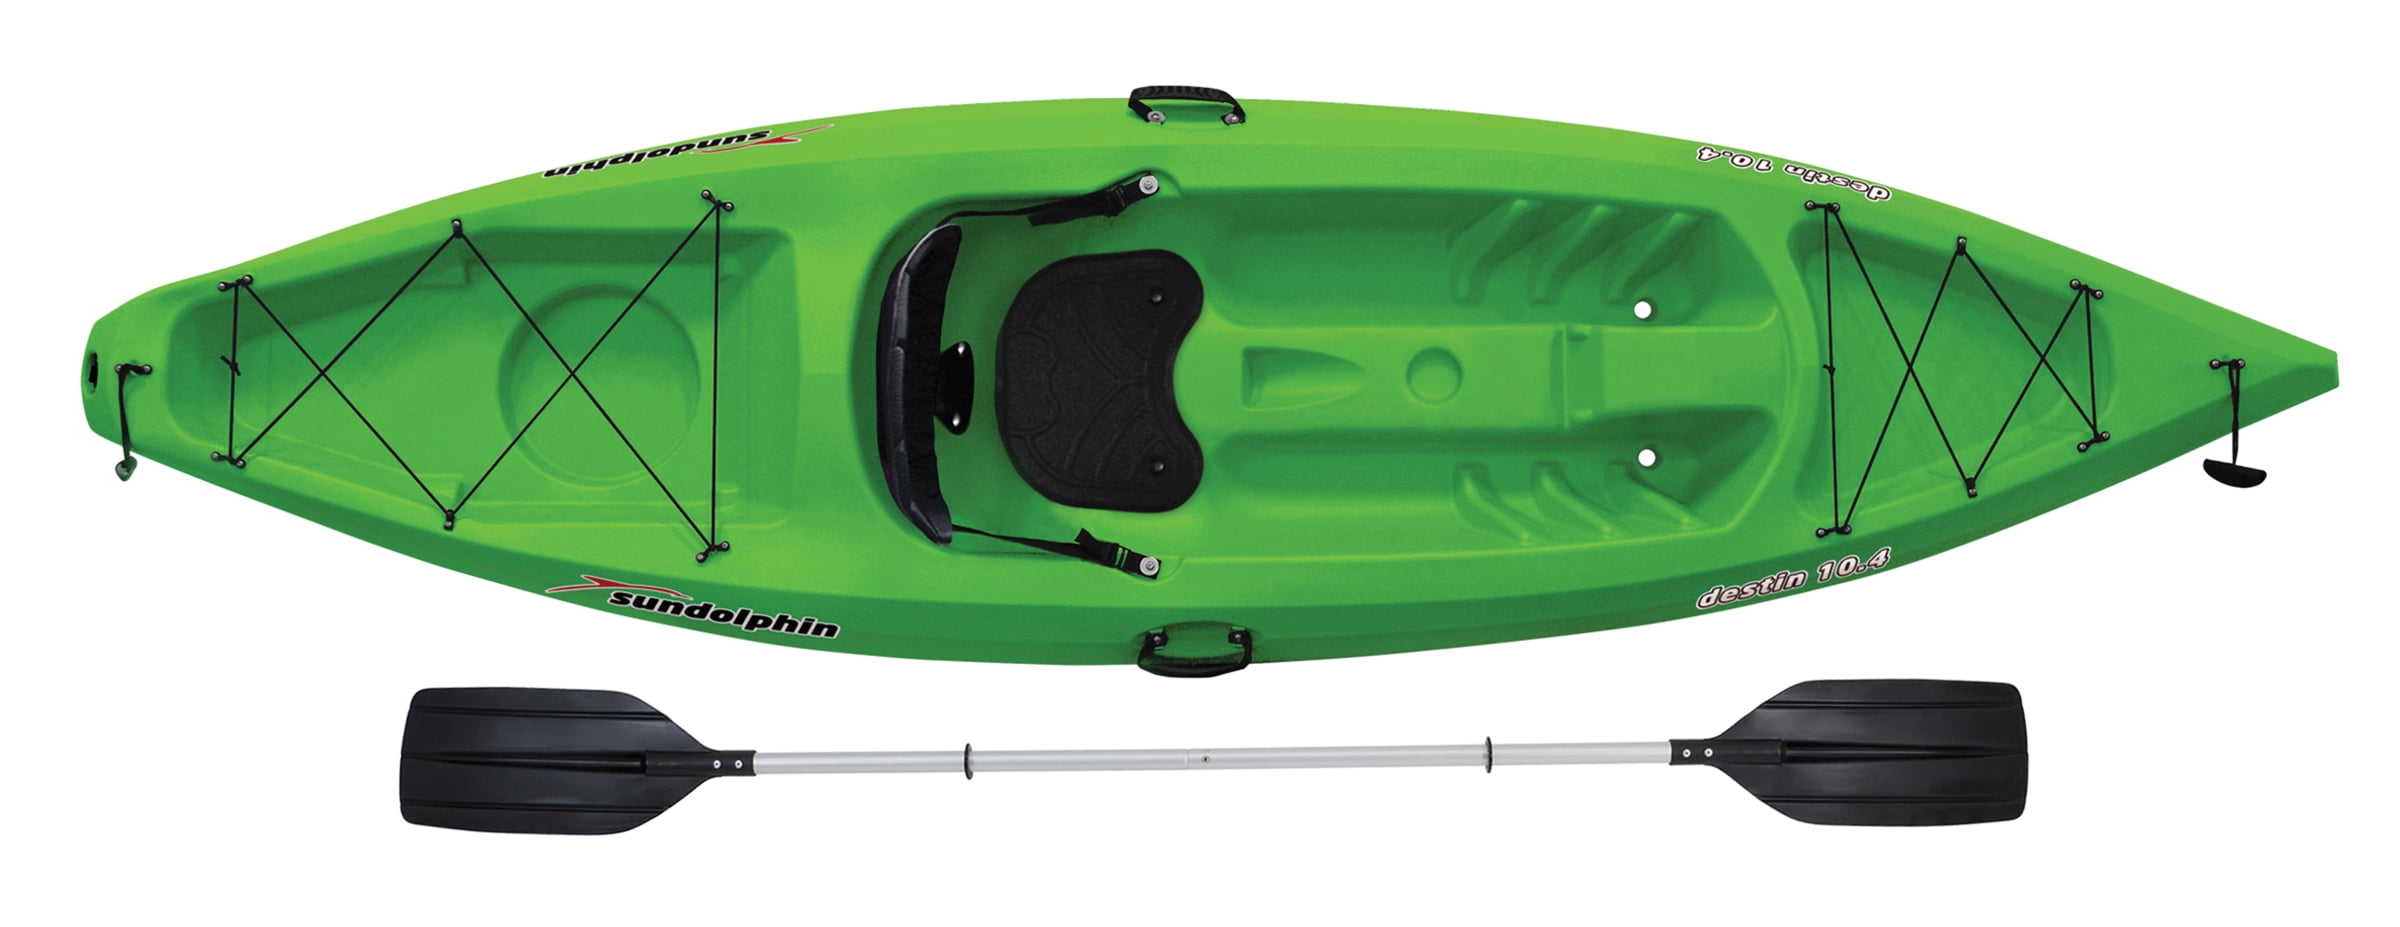 Kayaks For Sale In Destin Fl - Kayak Explorer